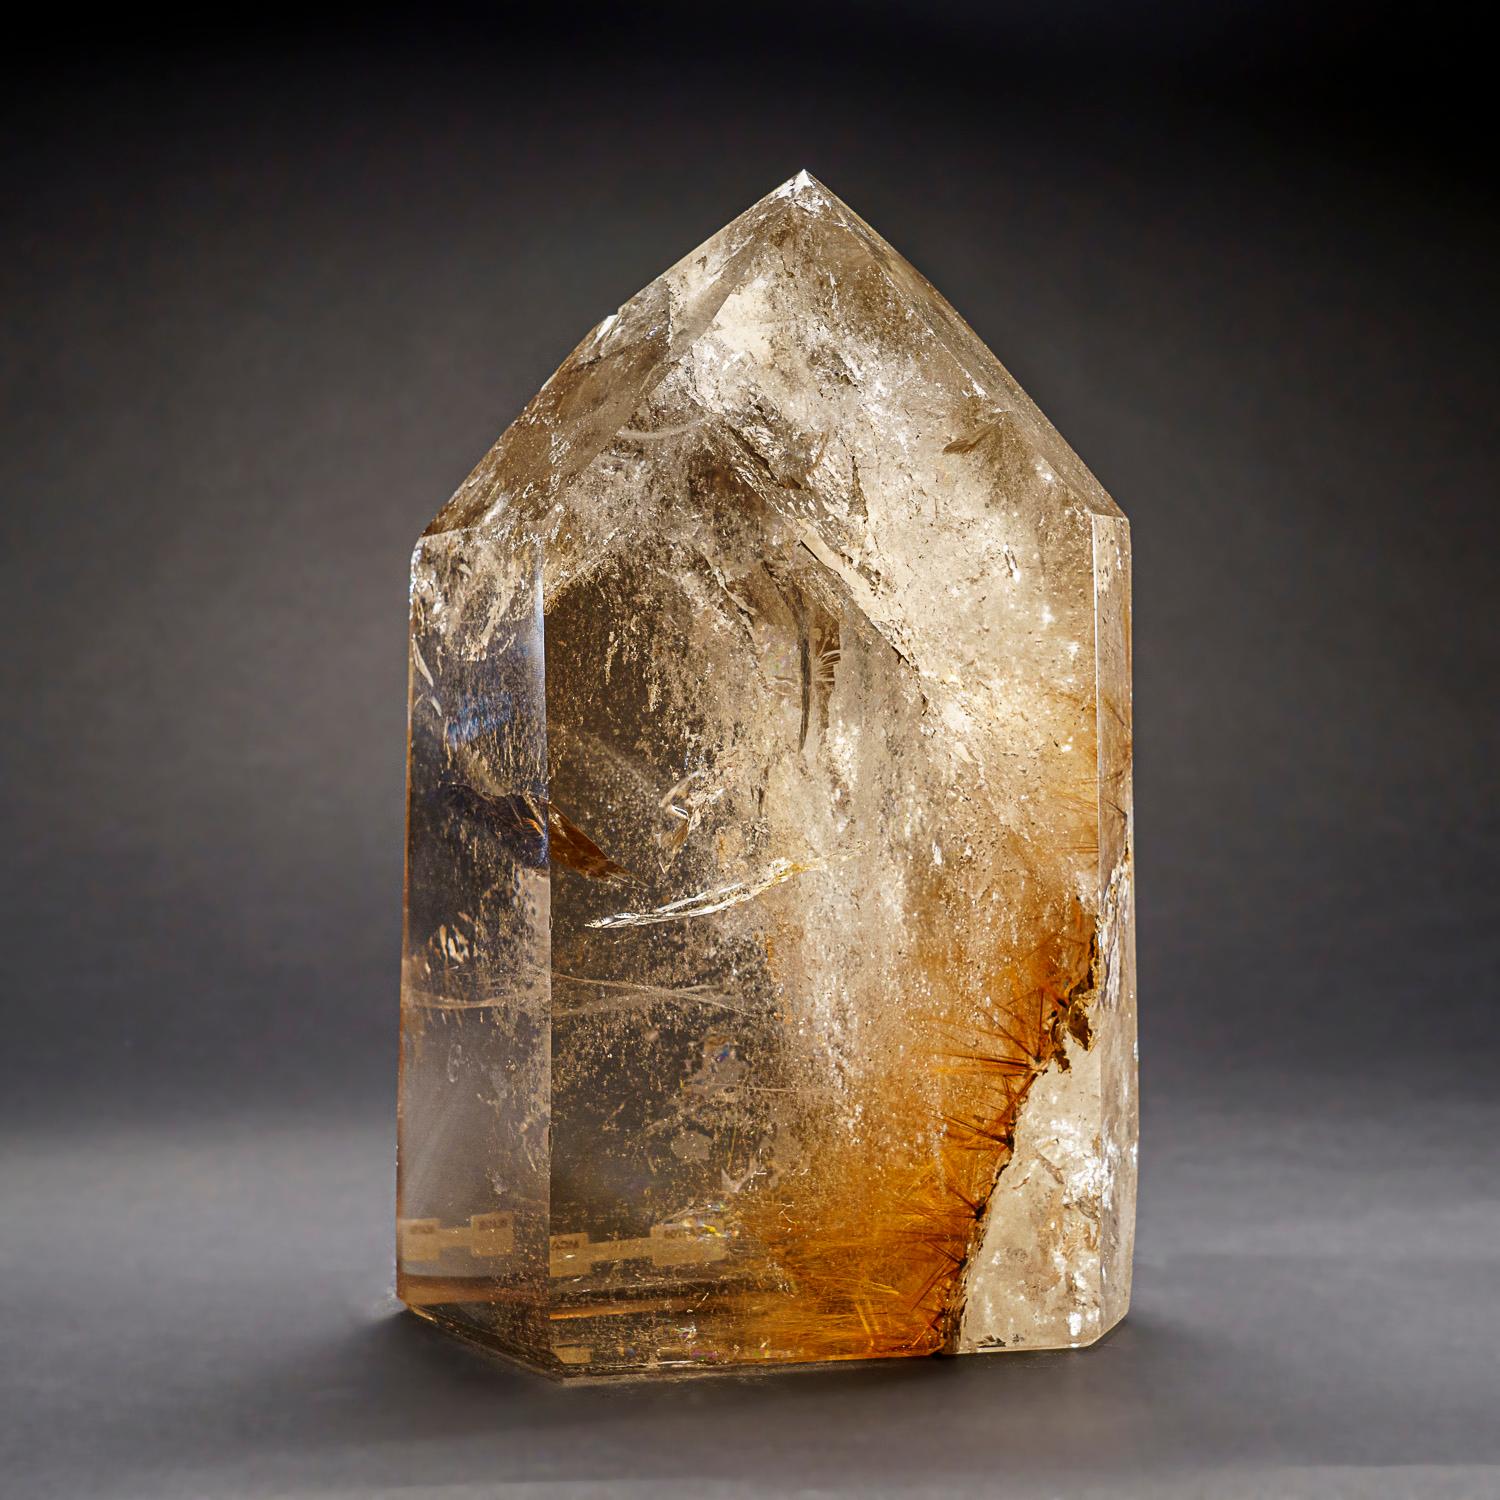 Grand point de cristal de quartz fumé authentique du Brésil (17.5 livres) Neuf à New York, NY